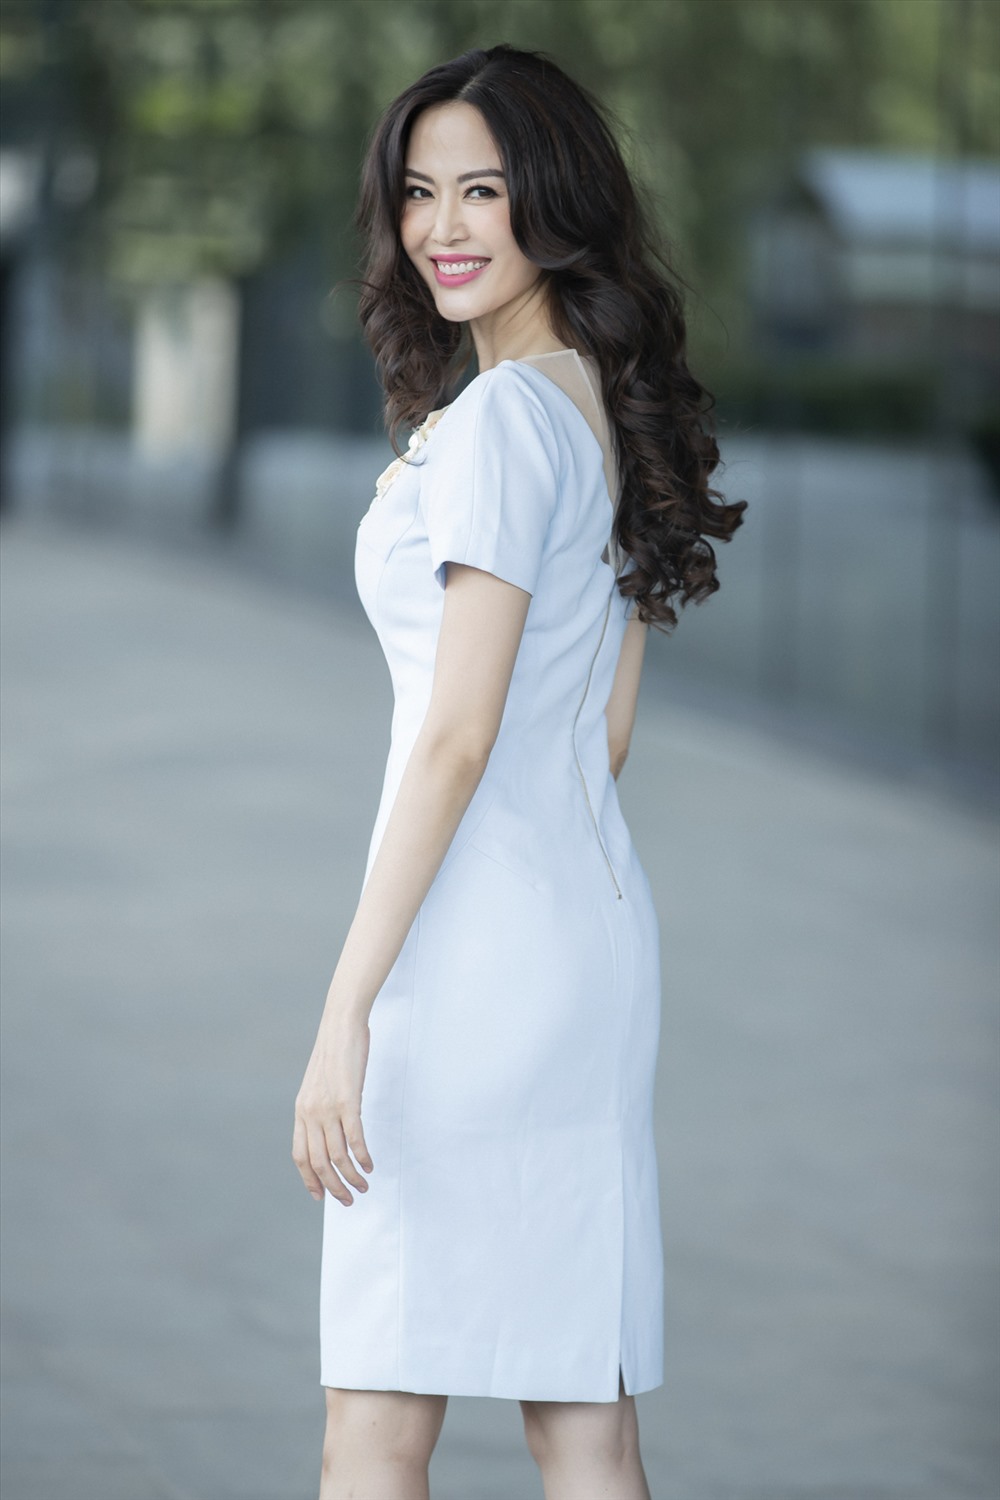 Hoa hậu Thu Thủy: “Phụ nữ đẹp nhất khi họ bước vào tuổi 40”